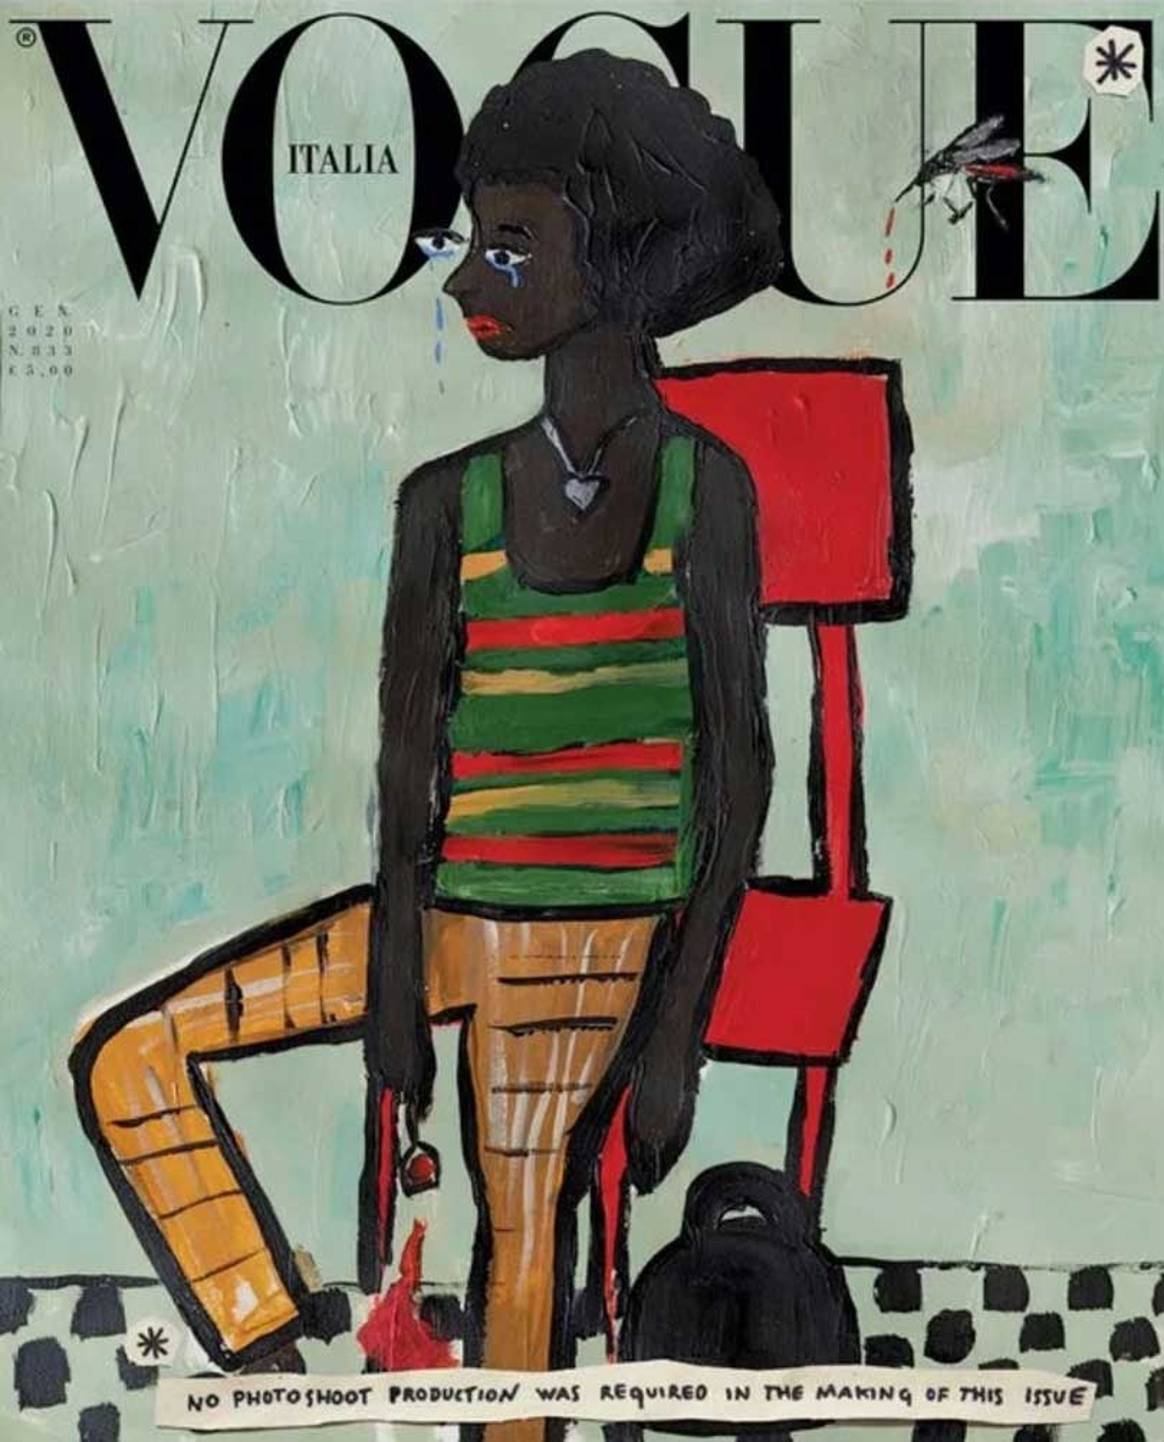 Der Nachhaltigkeit zuliebe: italienische Vogue verzichtet für Januar-Ausgabe auf Fotos